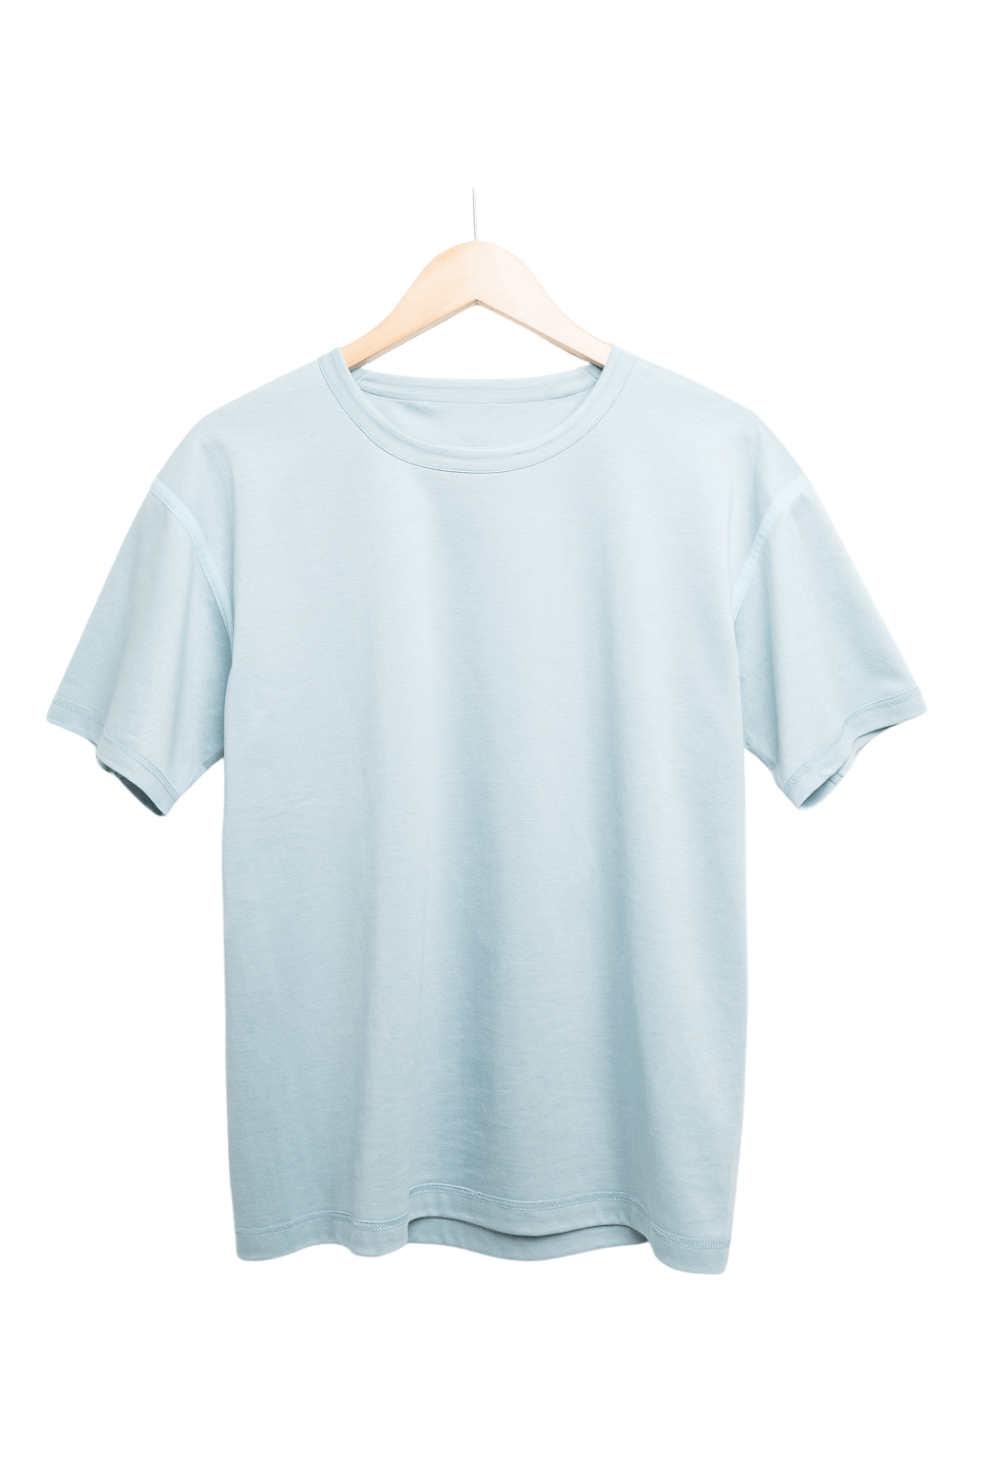 【KABIN-Tシャツ】【大人サイズ】縫い目外側/サックスブルー